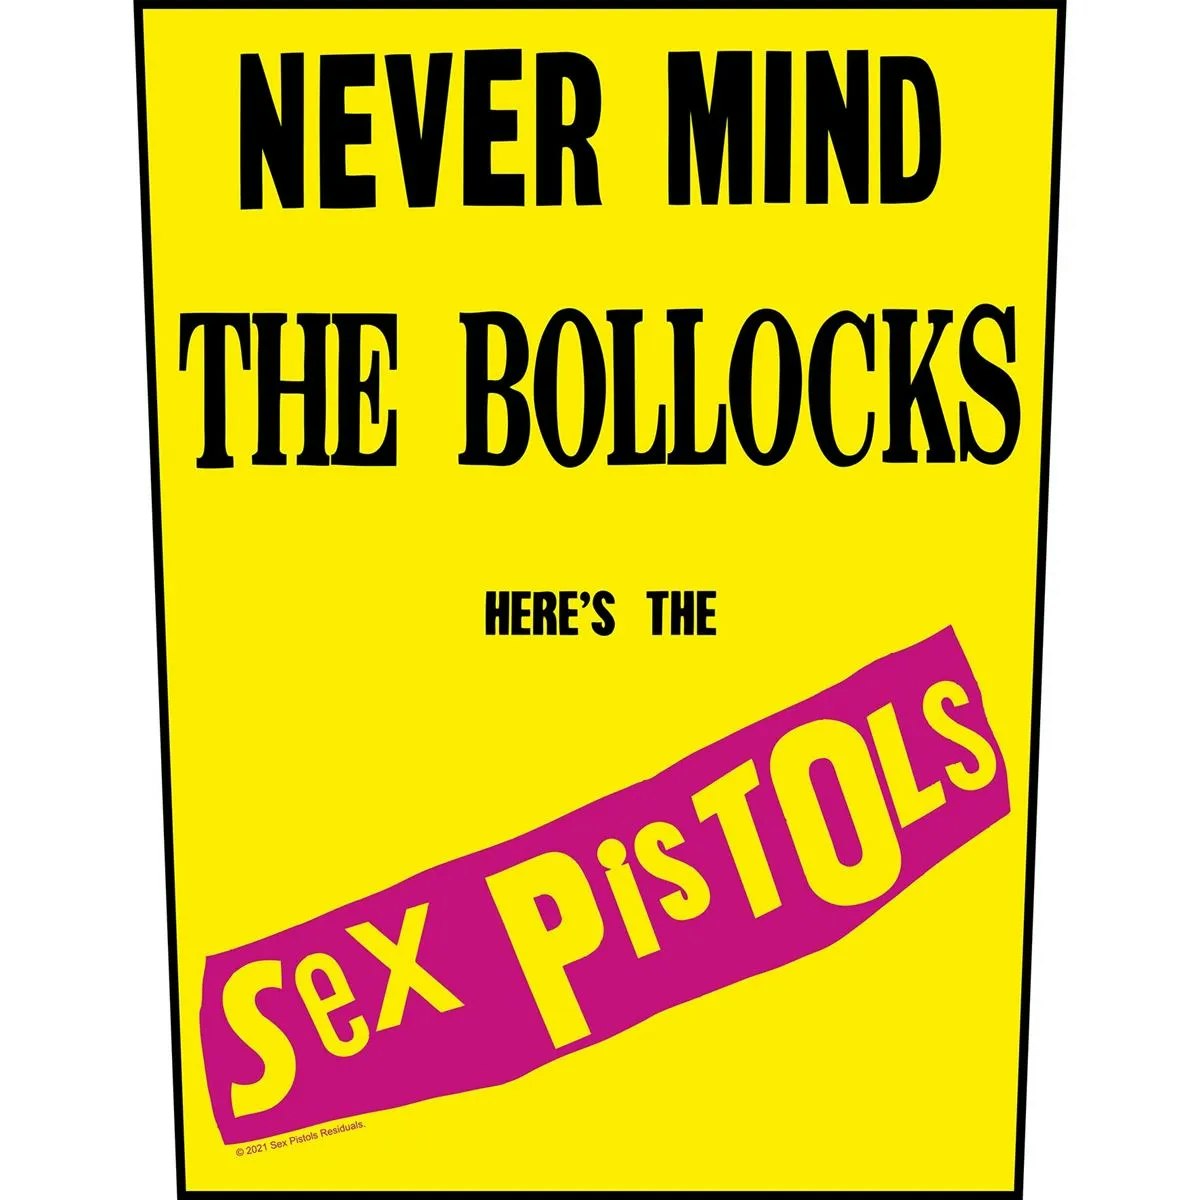 SIX PISTOLS - NEVER MIND THE BOLLOCKS Back Patch